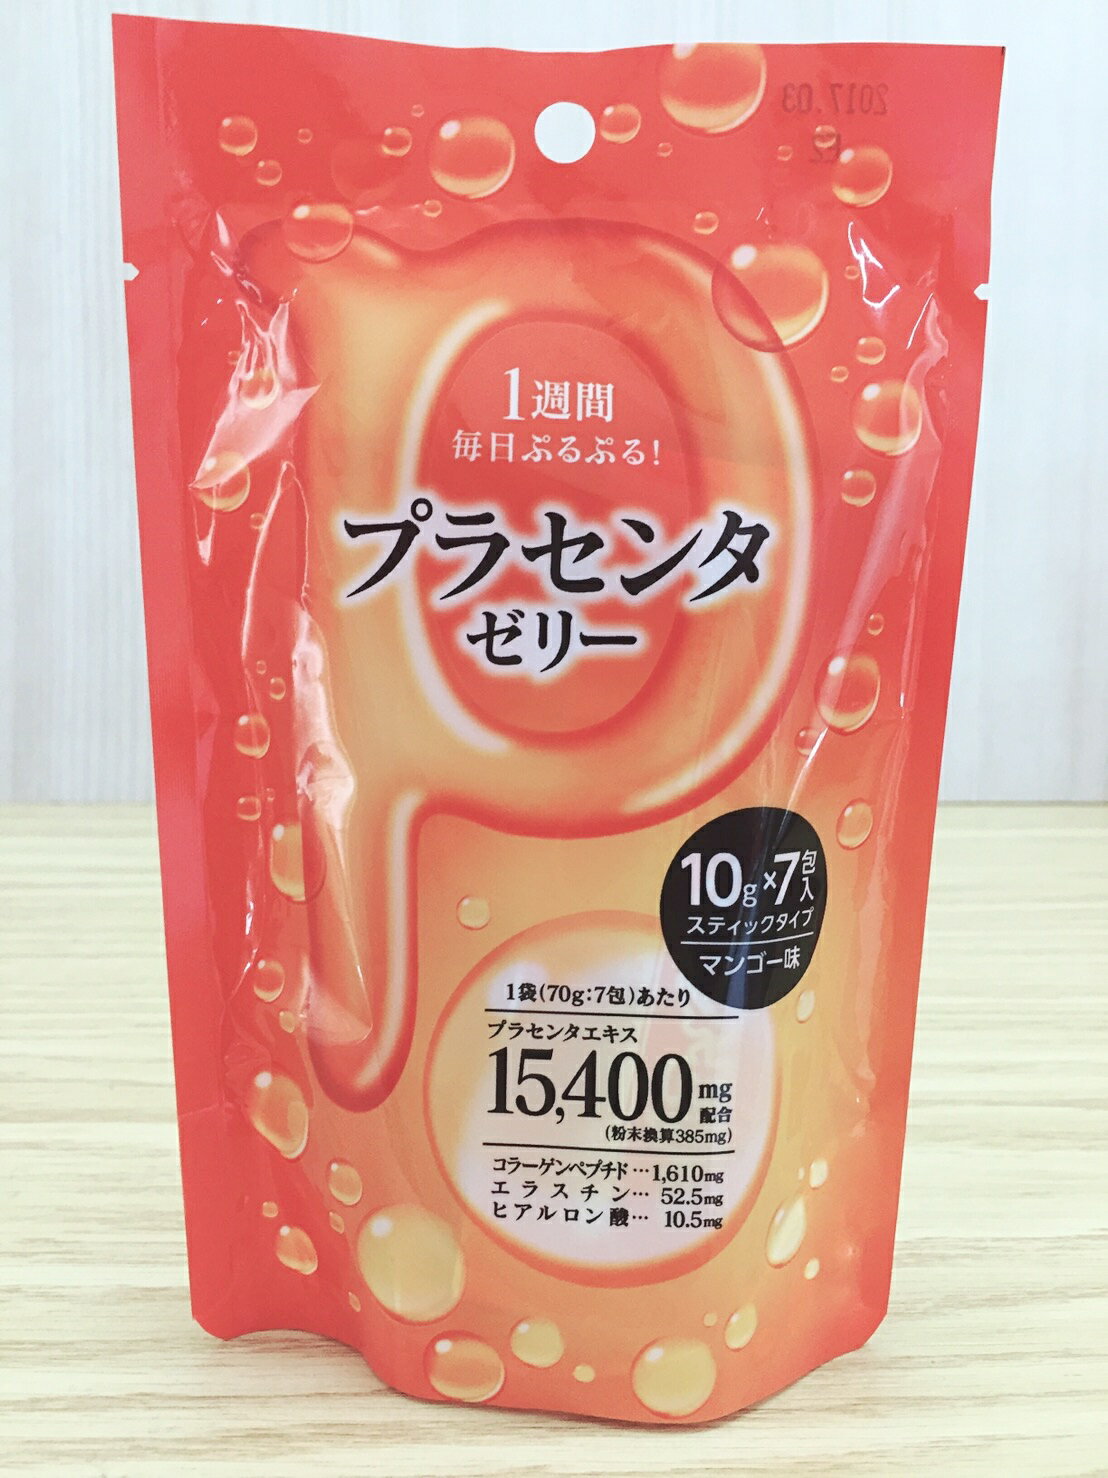 【真愛日本】16051900019 膠原蛋白果凍-週間7包入芒果 網路 團購 熱銷 日本代購